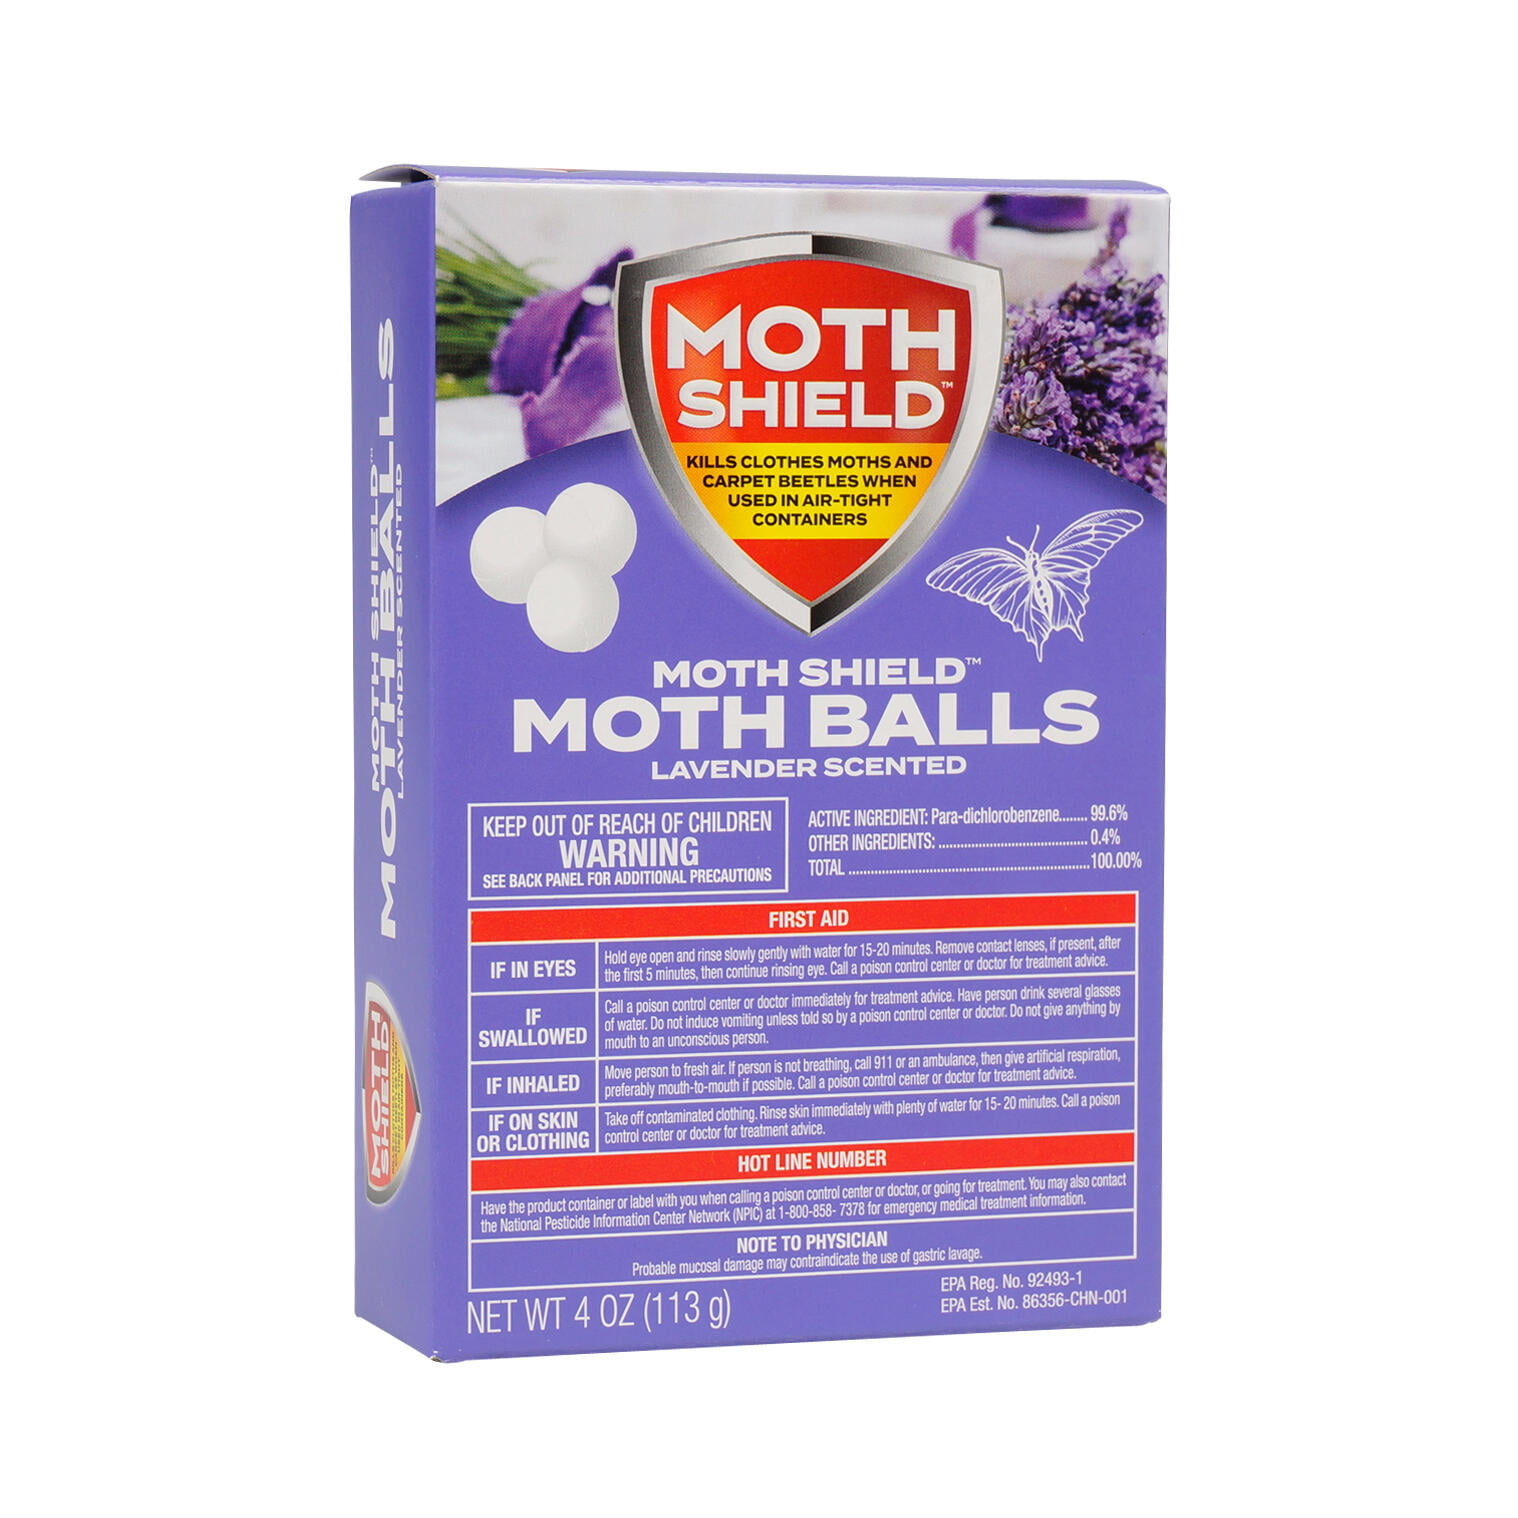 Supply Guru MothGuard 3 Pack of 5 oz Old Fashioned Original Moth Balls  Repellent Closet Clothes Protector, No Clinging Odor, Kills Clothes Moths